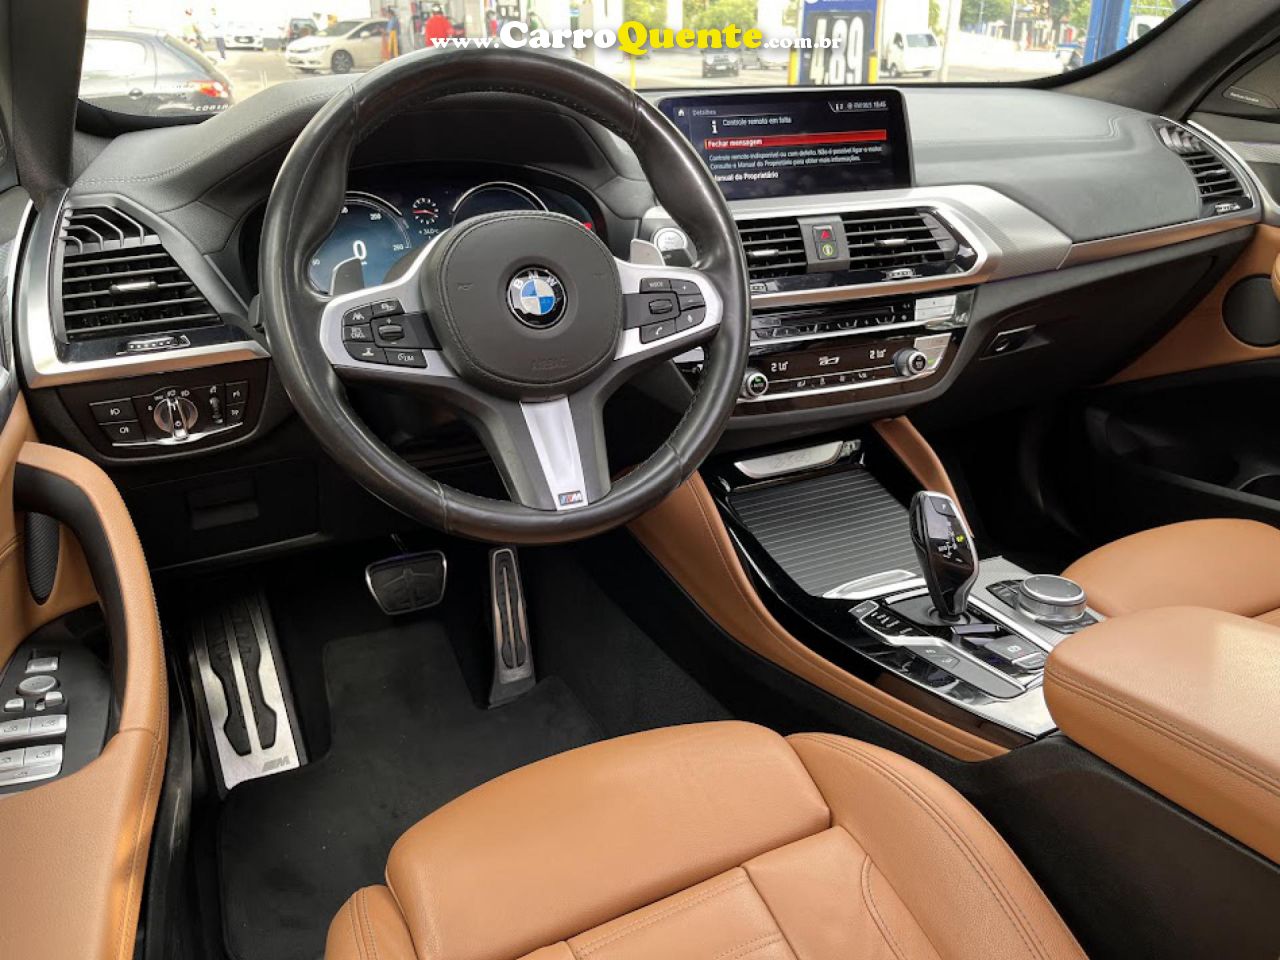 BMW   X4 XDRIVE 30I M-SPORT 2.0 TB 252CV AUT   AZUL 2020 2.0 GASOLINA - Loja